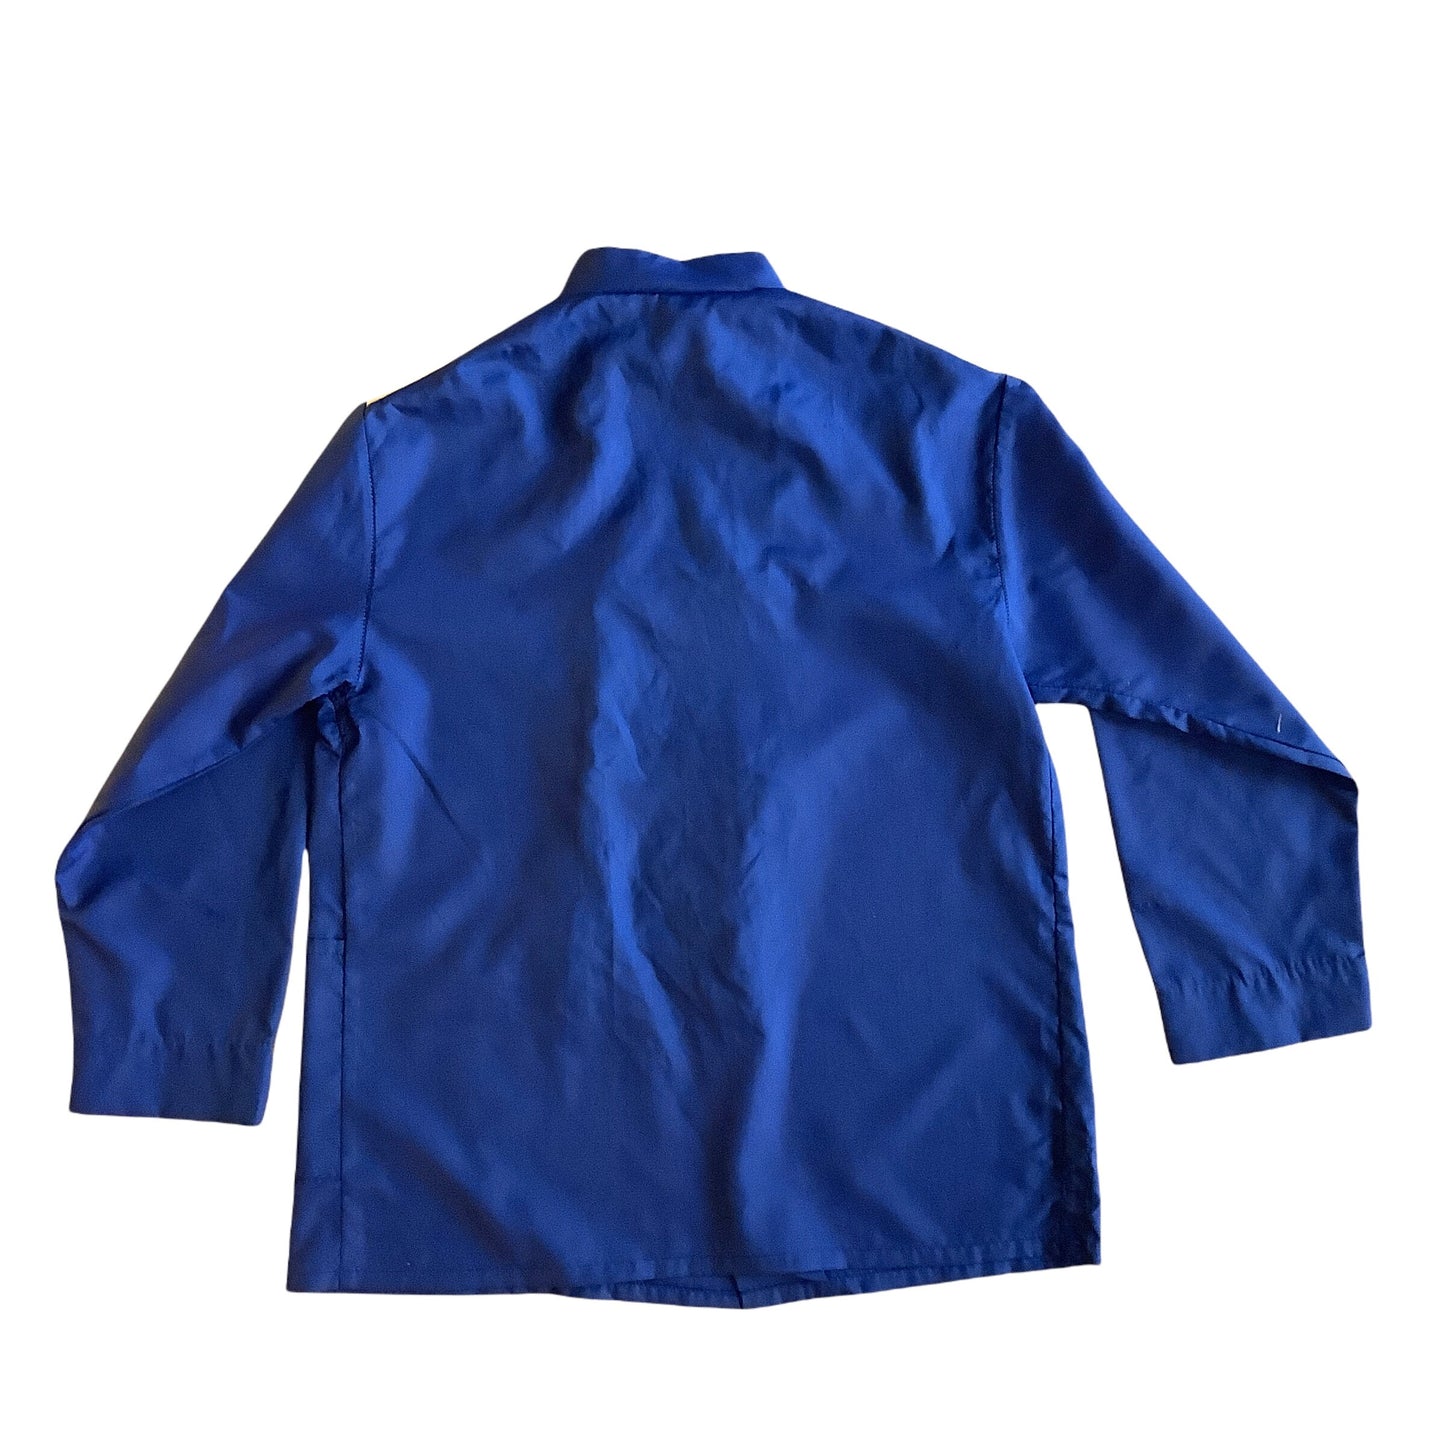 Vintage 1960s Blue "CAPTAIN" Nylon Shirt / Blouse  8-10Y